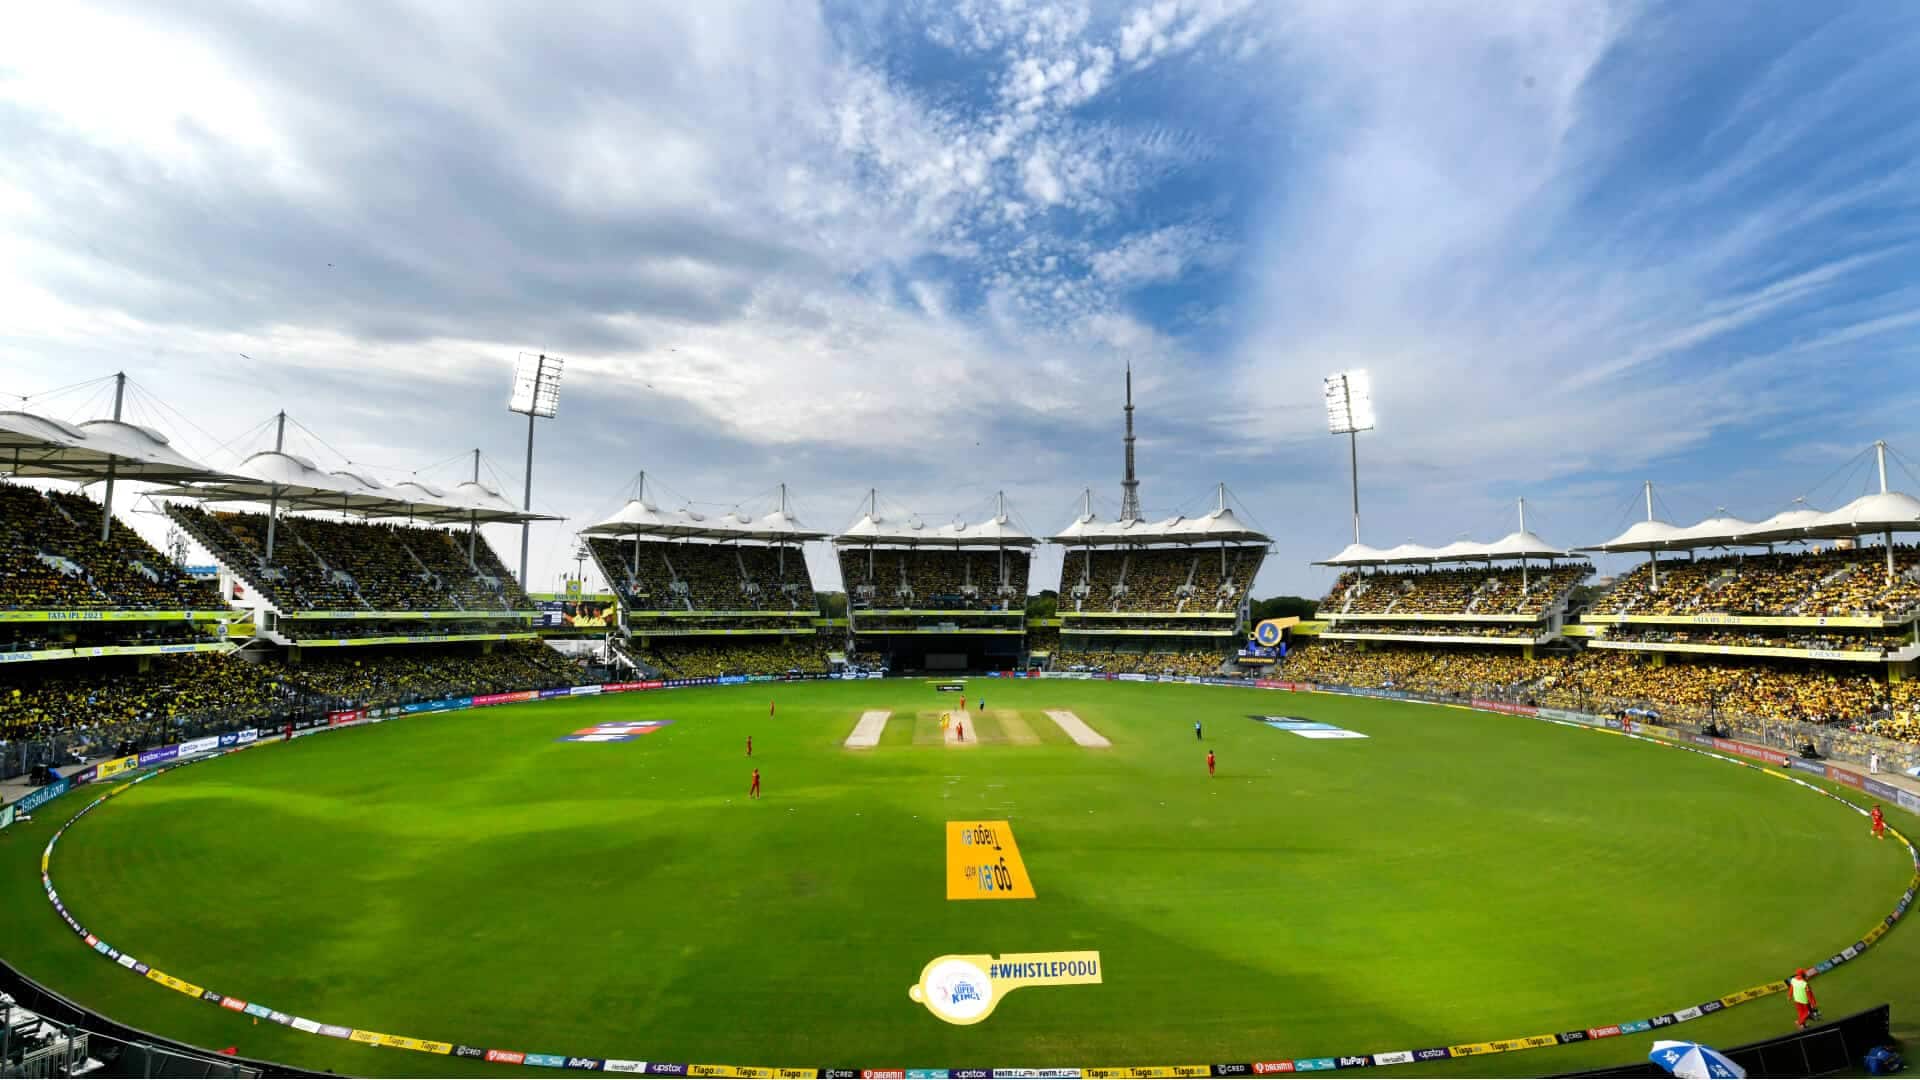 MA Chidambaram Stadium, Chennai [X.com]